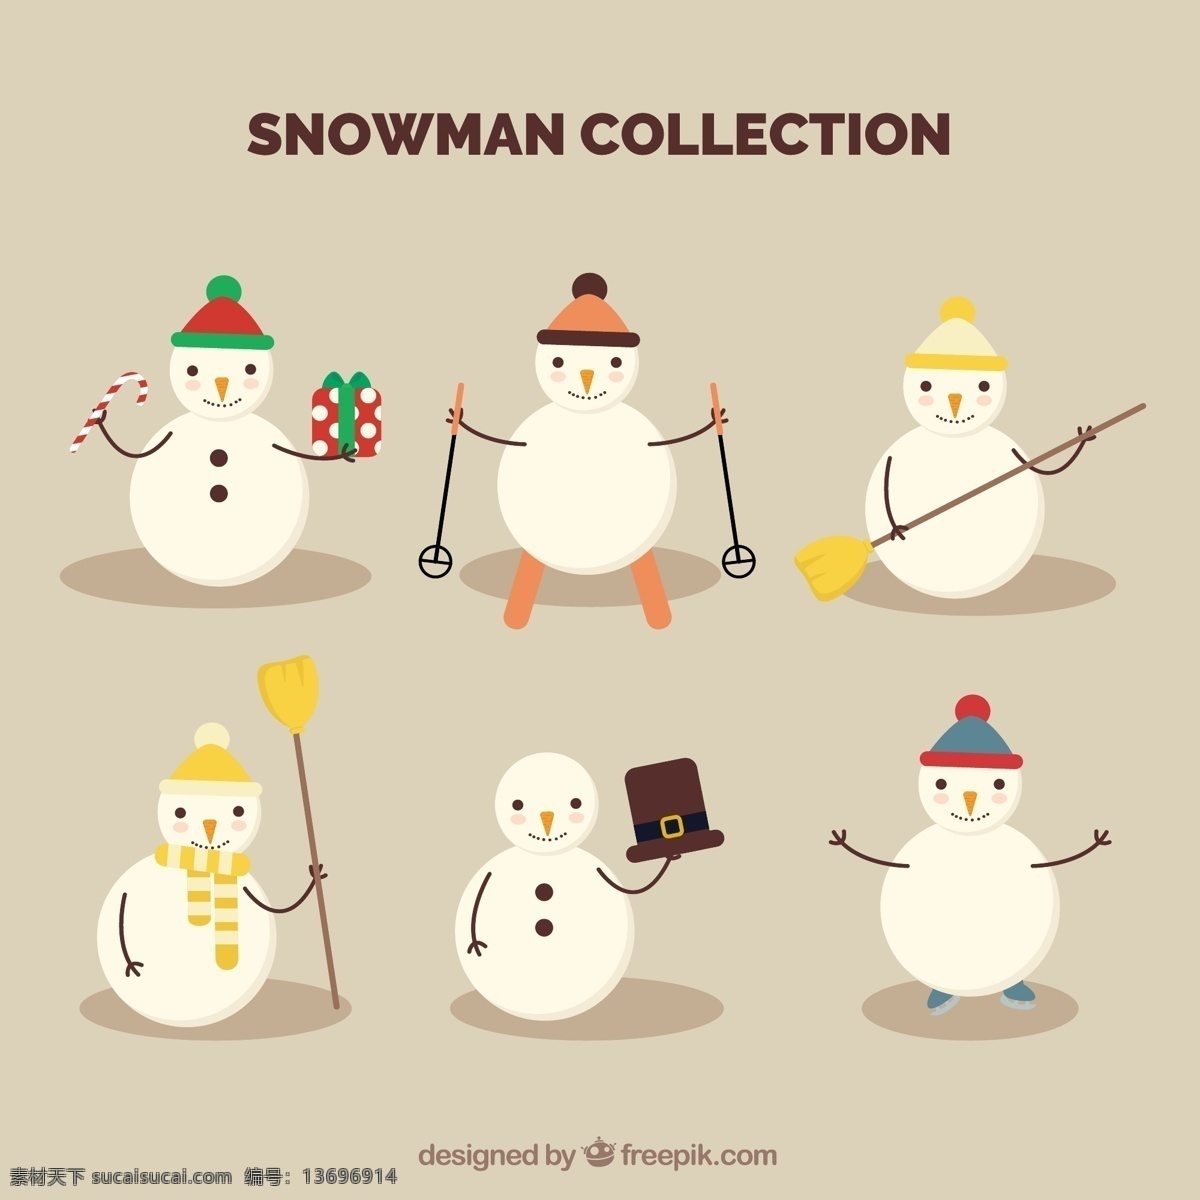 持有 不同 对象 分类 雪人 圣诞节 几何 礼物 新年 圣诞快乐 冬天 糖果 扁平 性格 新的帽子 装饰 平面设计 滑雪 今年 文化